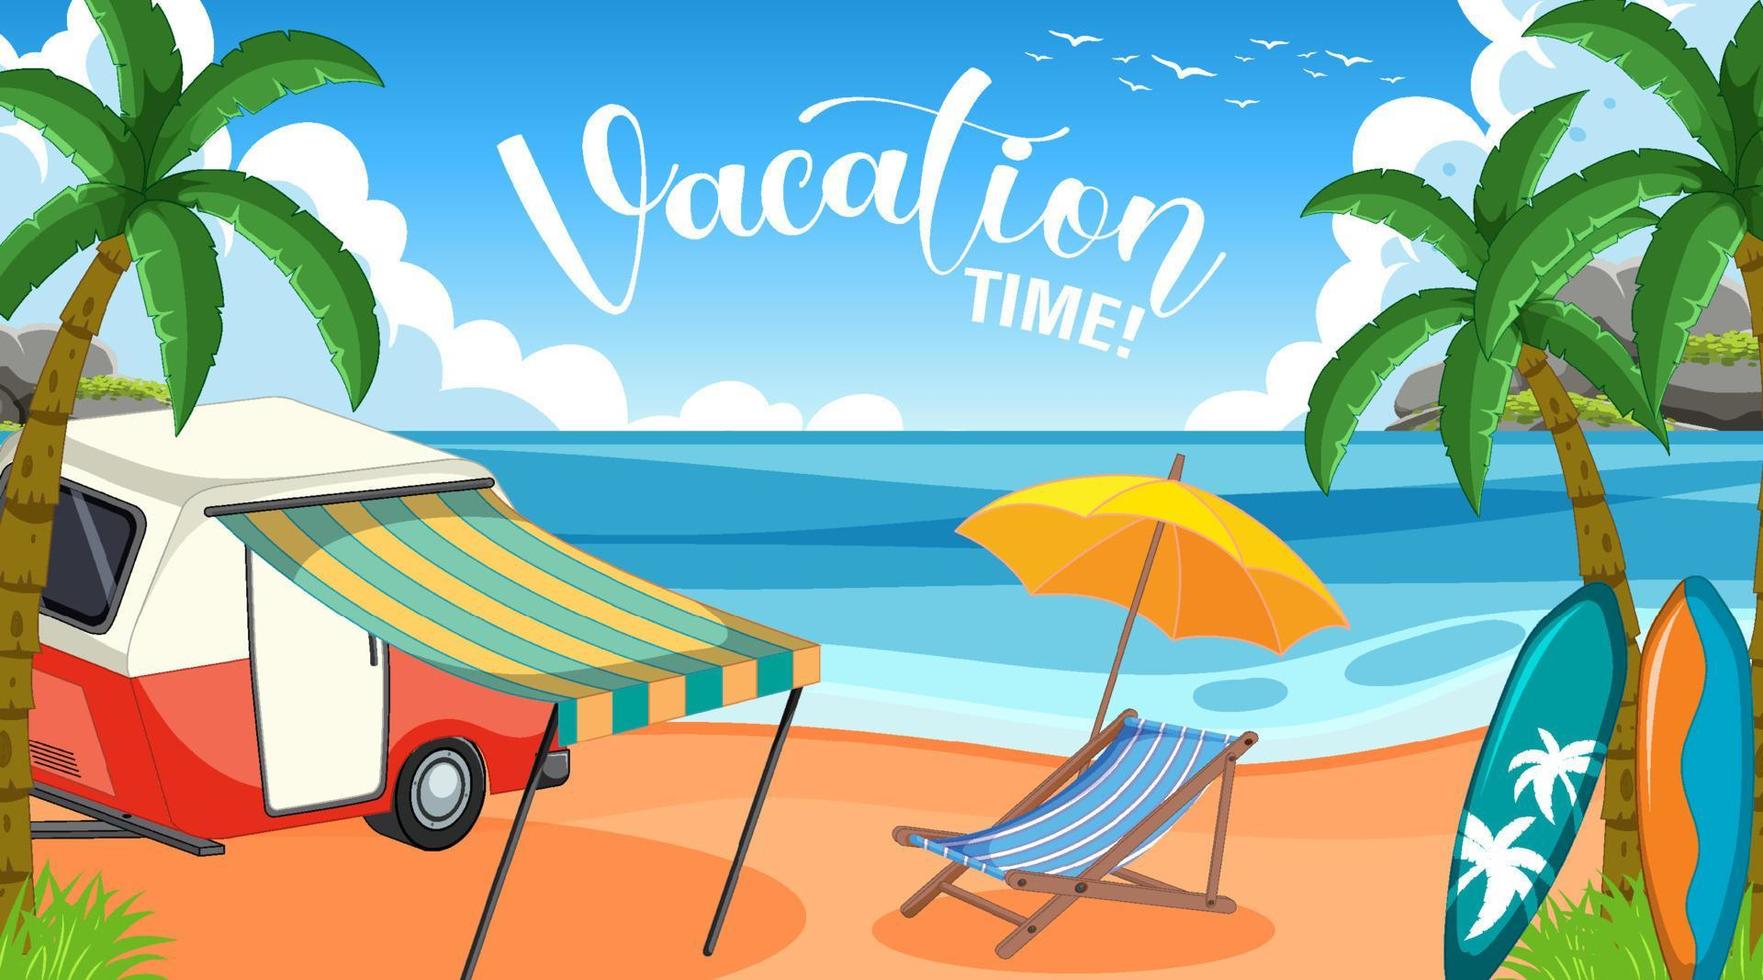 férias de verão no cartaz da praia vetor